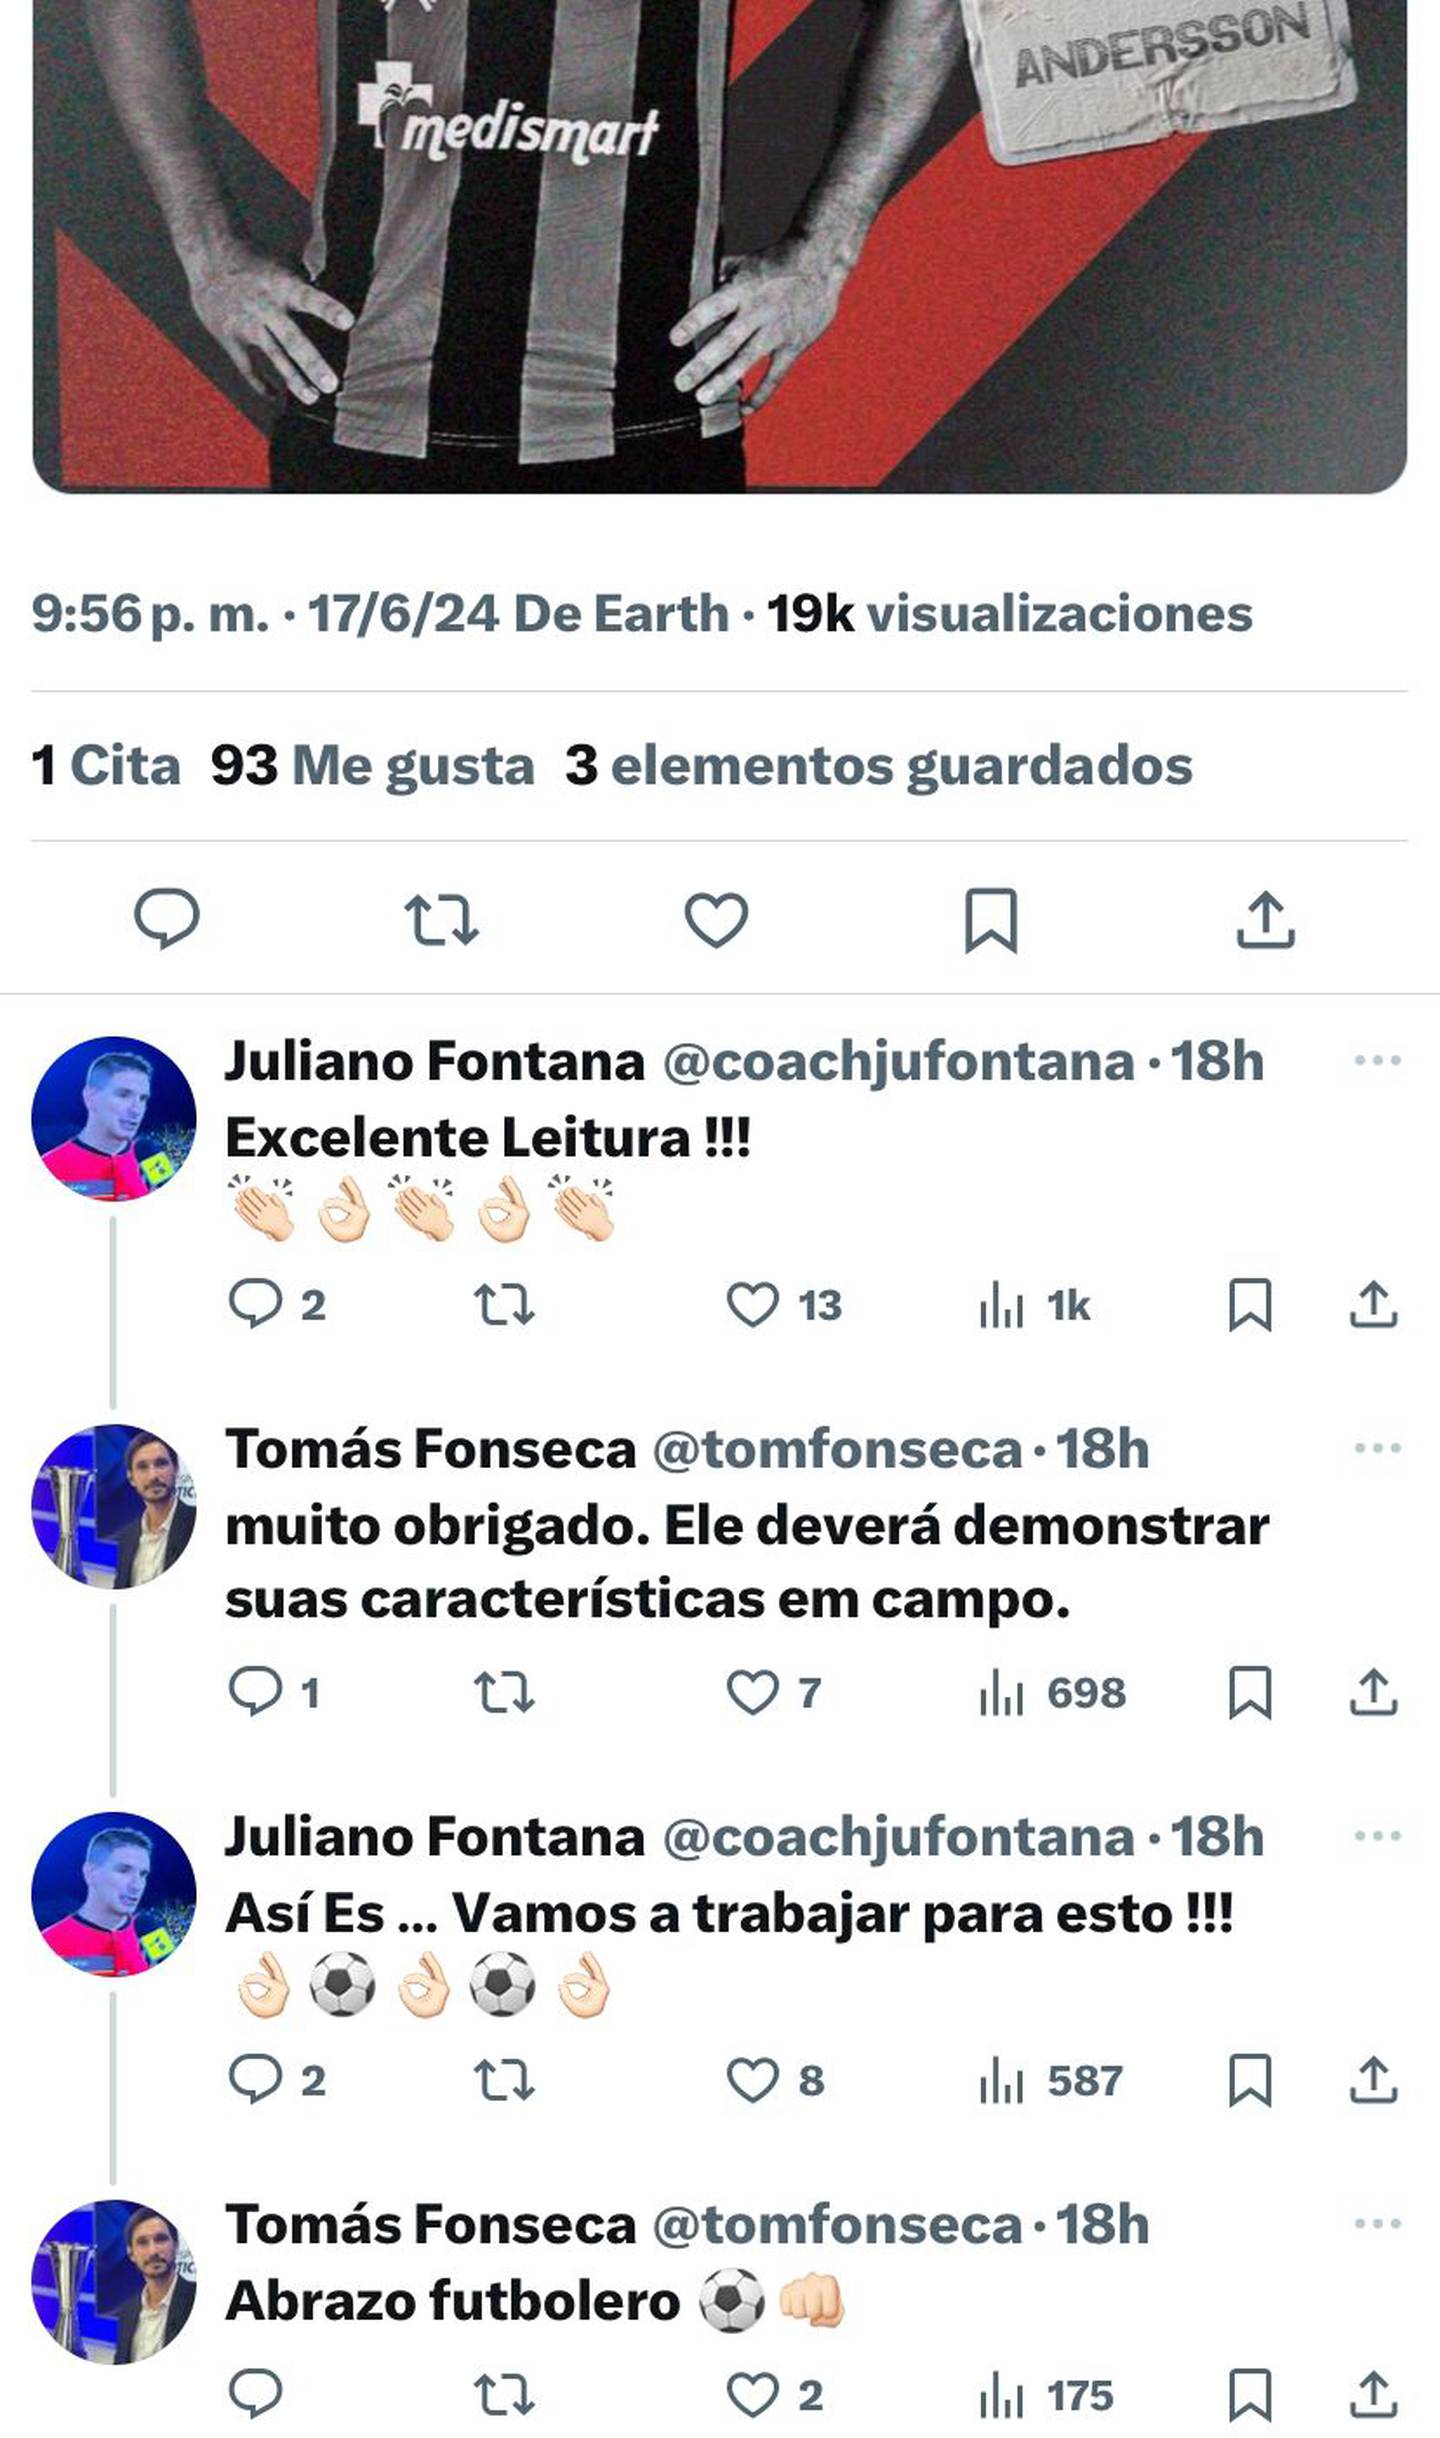 Juliano Fontana y Tomás Fonseca tuvieron un intercambio de ideas en X